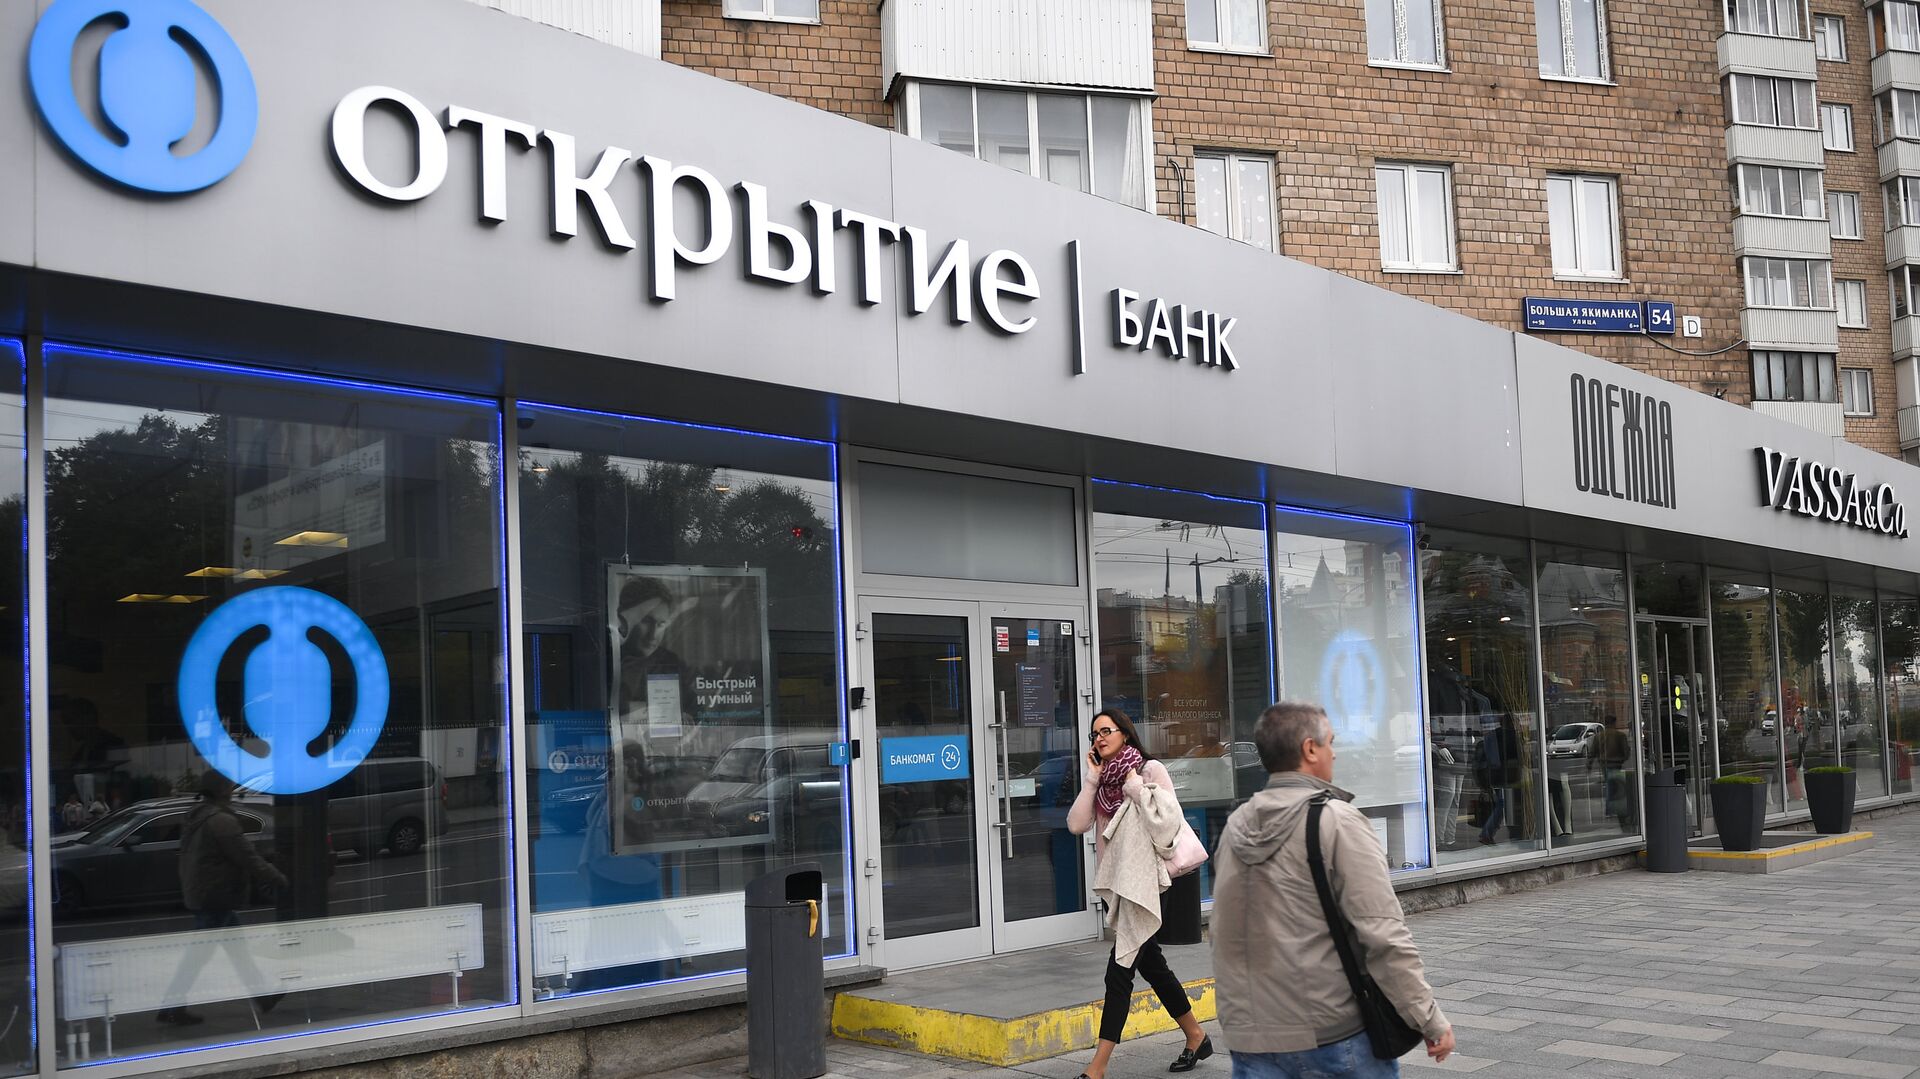 ЦБ объявил о поиске стратегического инвестора для покупки банка Открытие